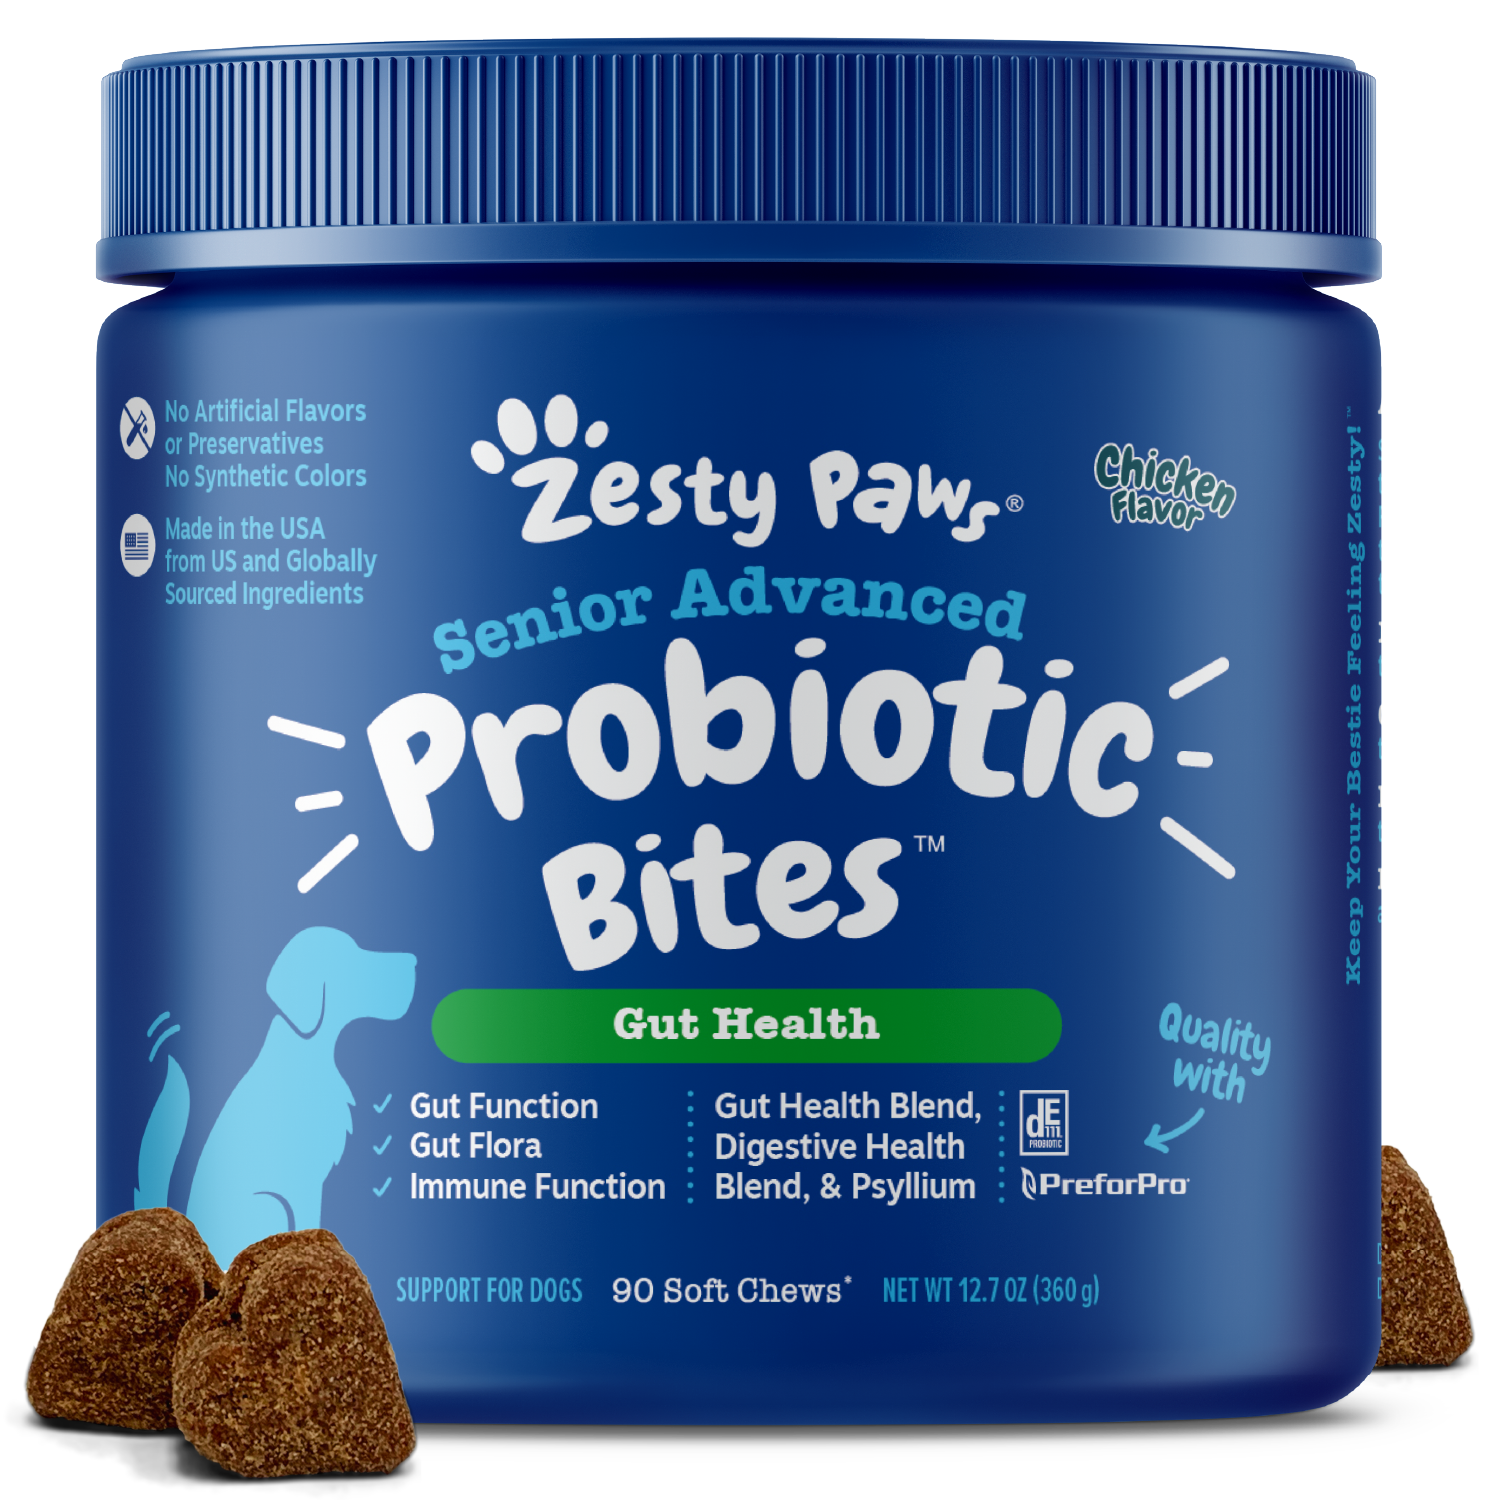 Senior Advanced Probiotic Bites™ for Senior Dogs